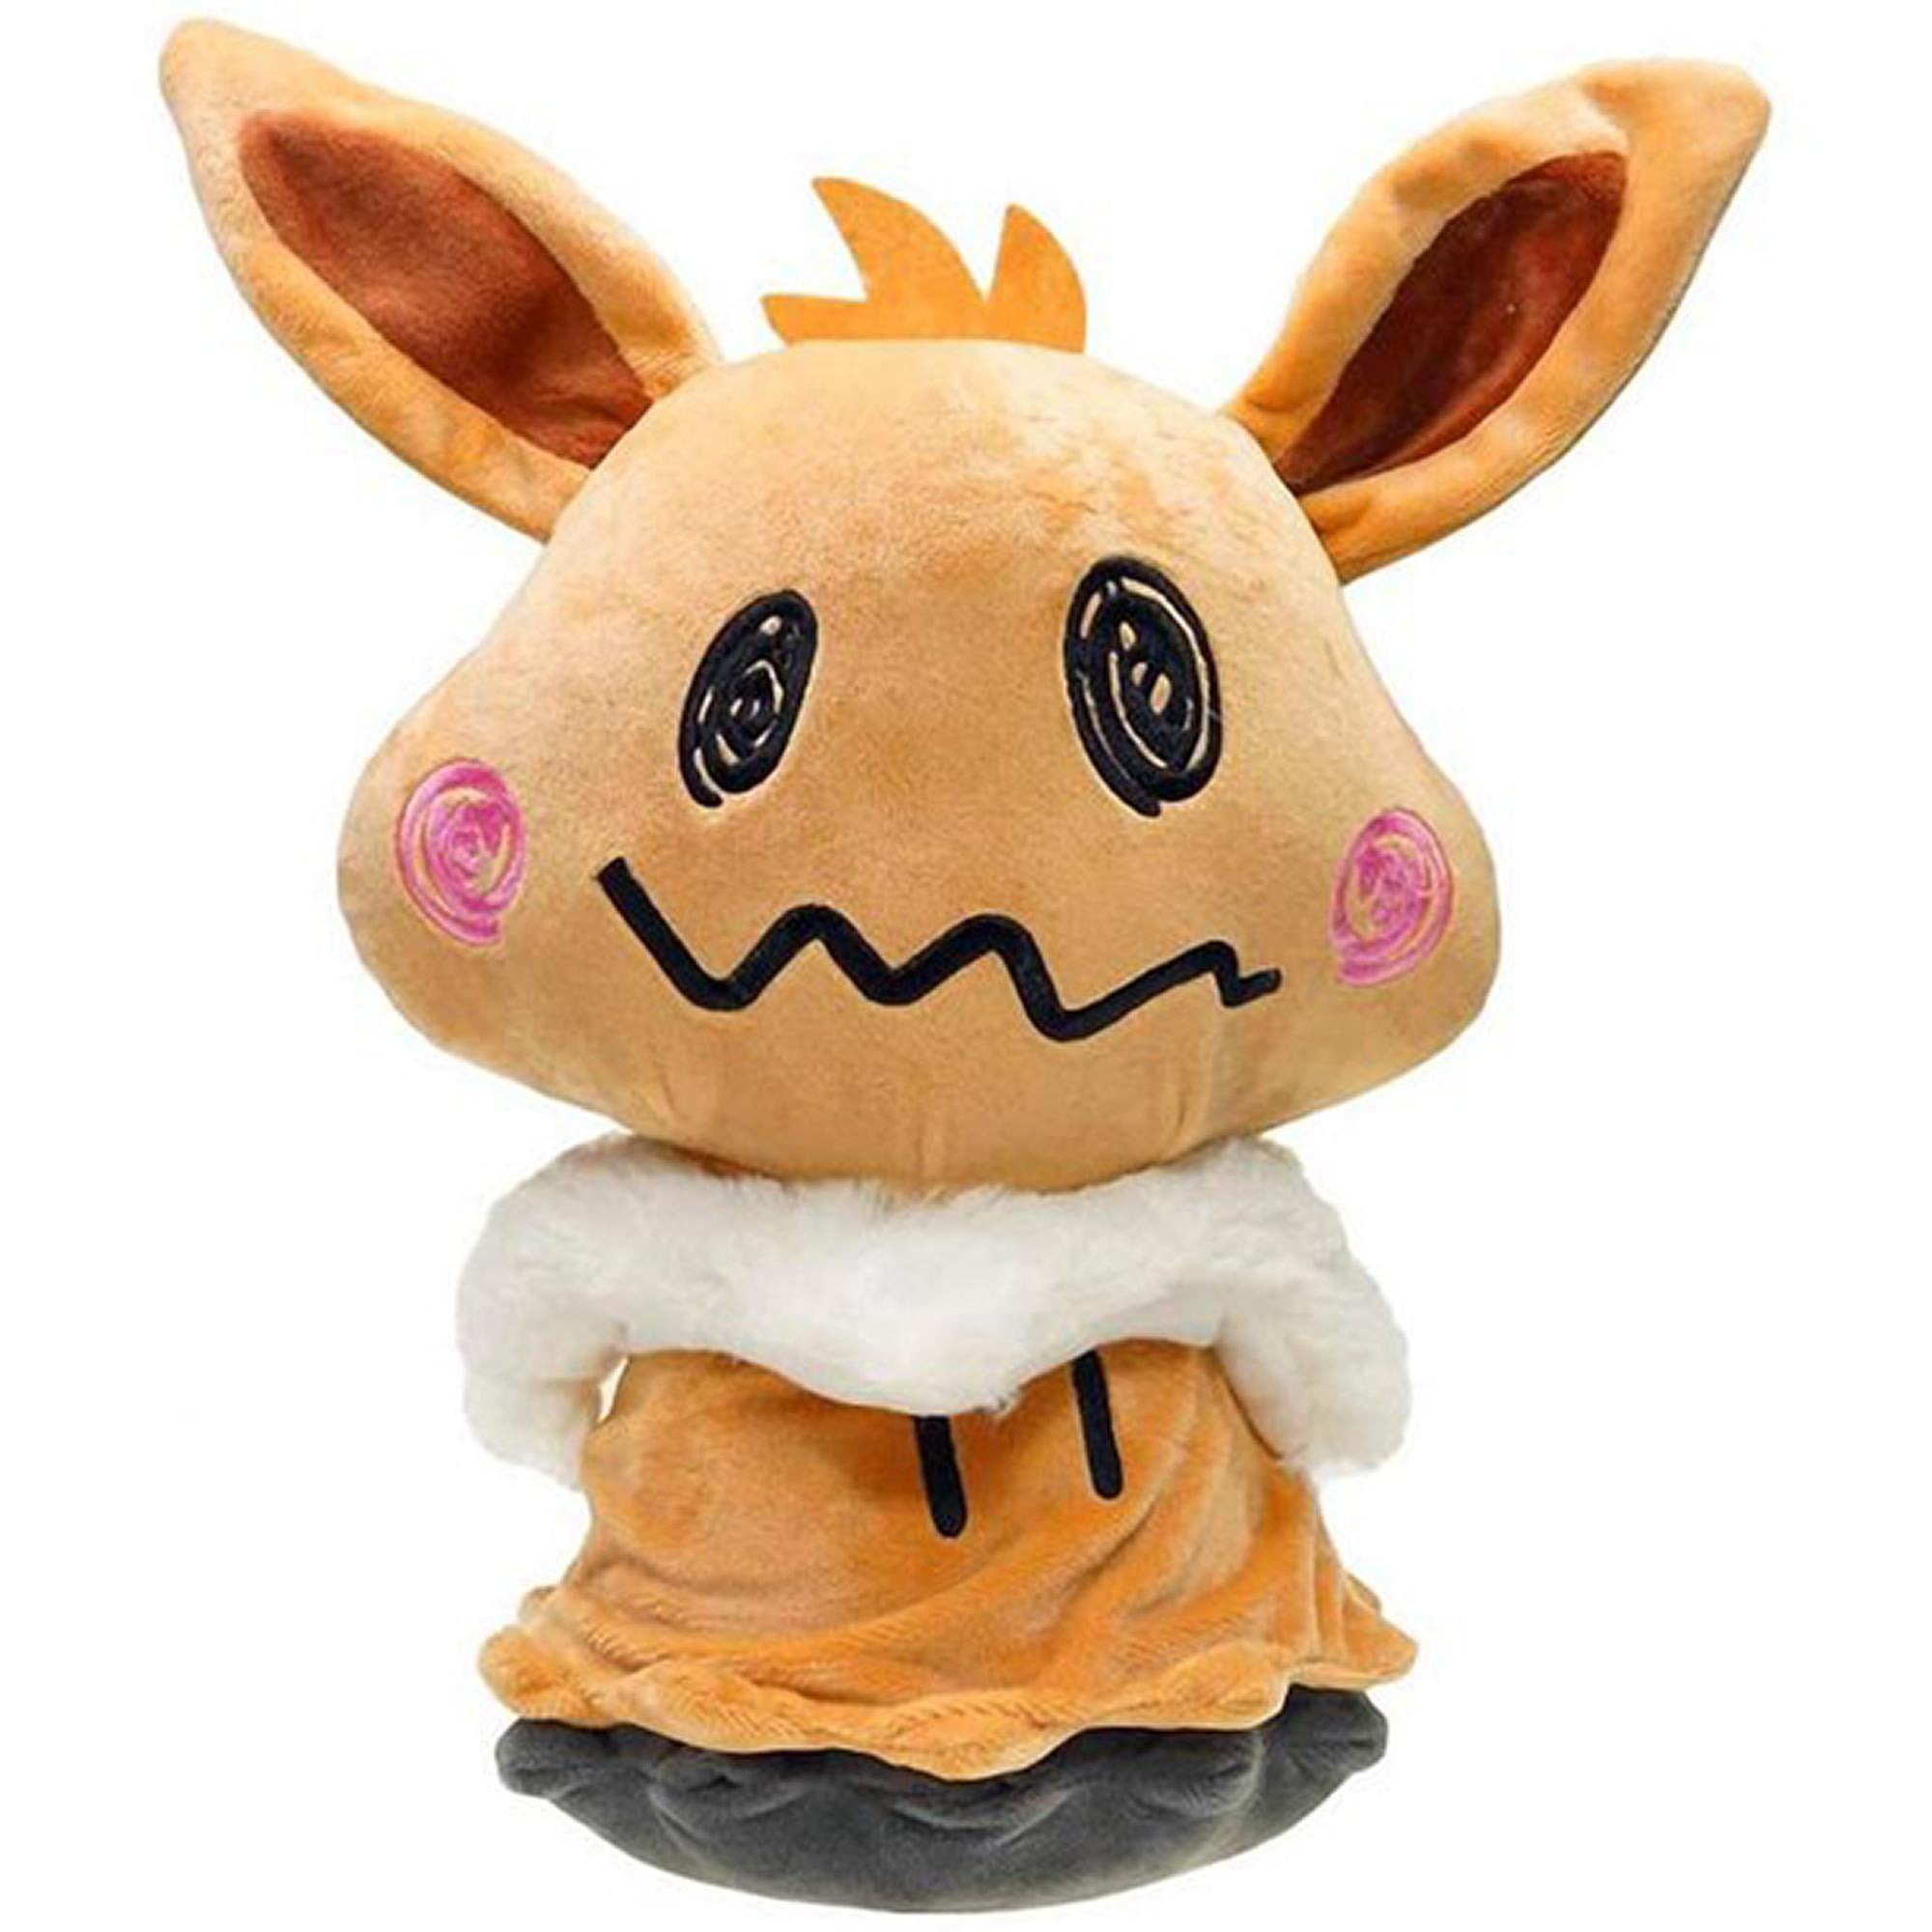 Minikyu Disguised Form Plush Doll Soft Toy Stuffed Animal Teddy 16"